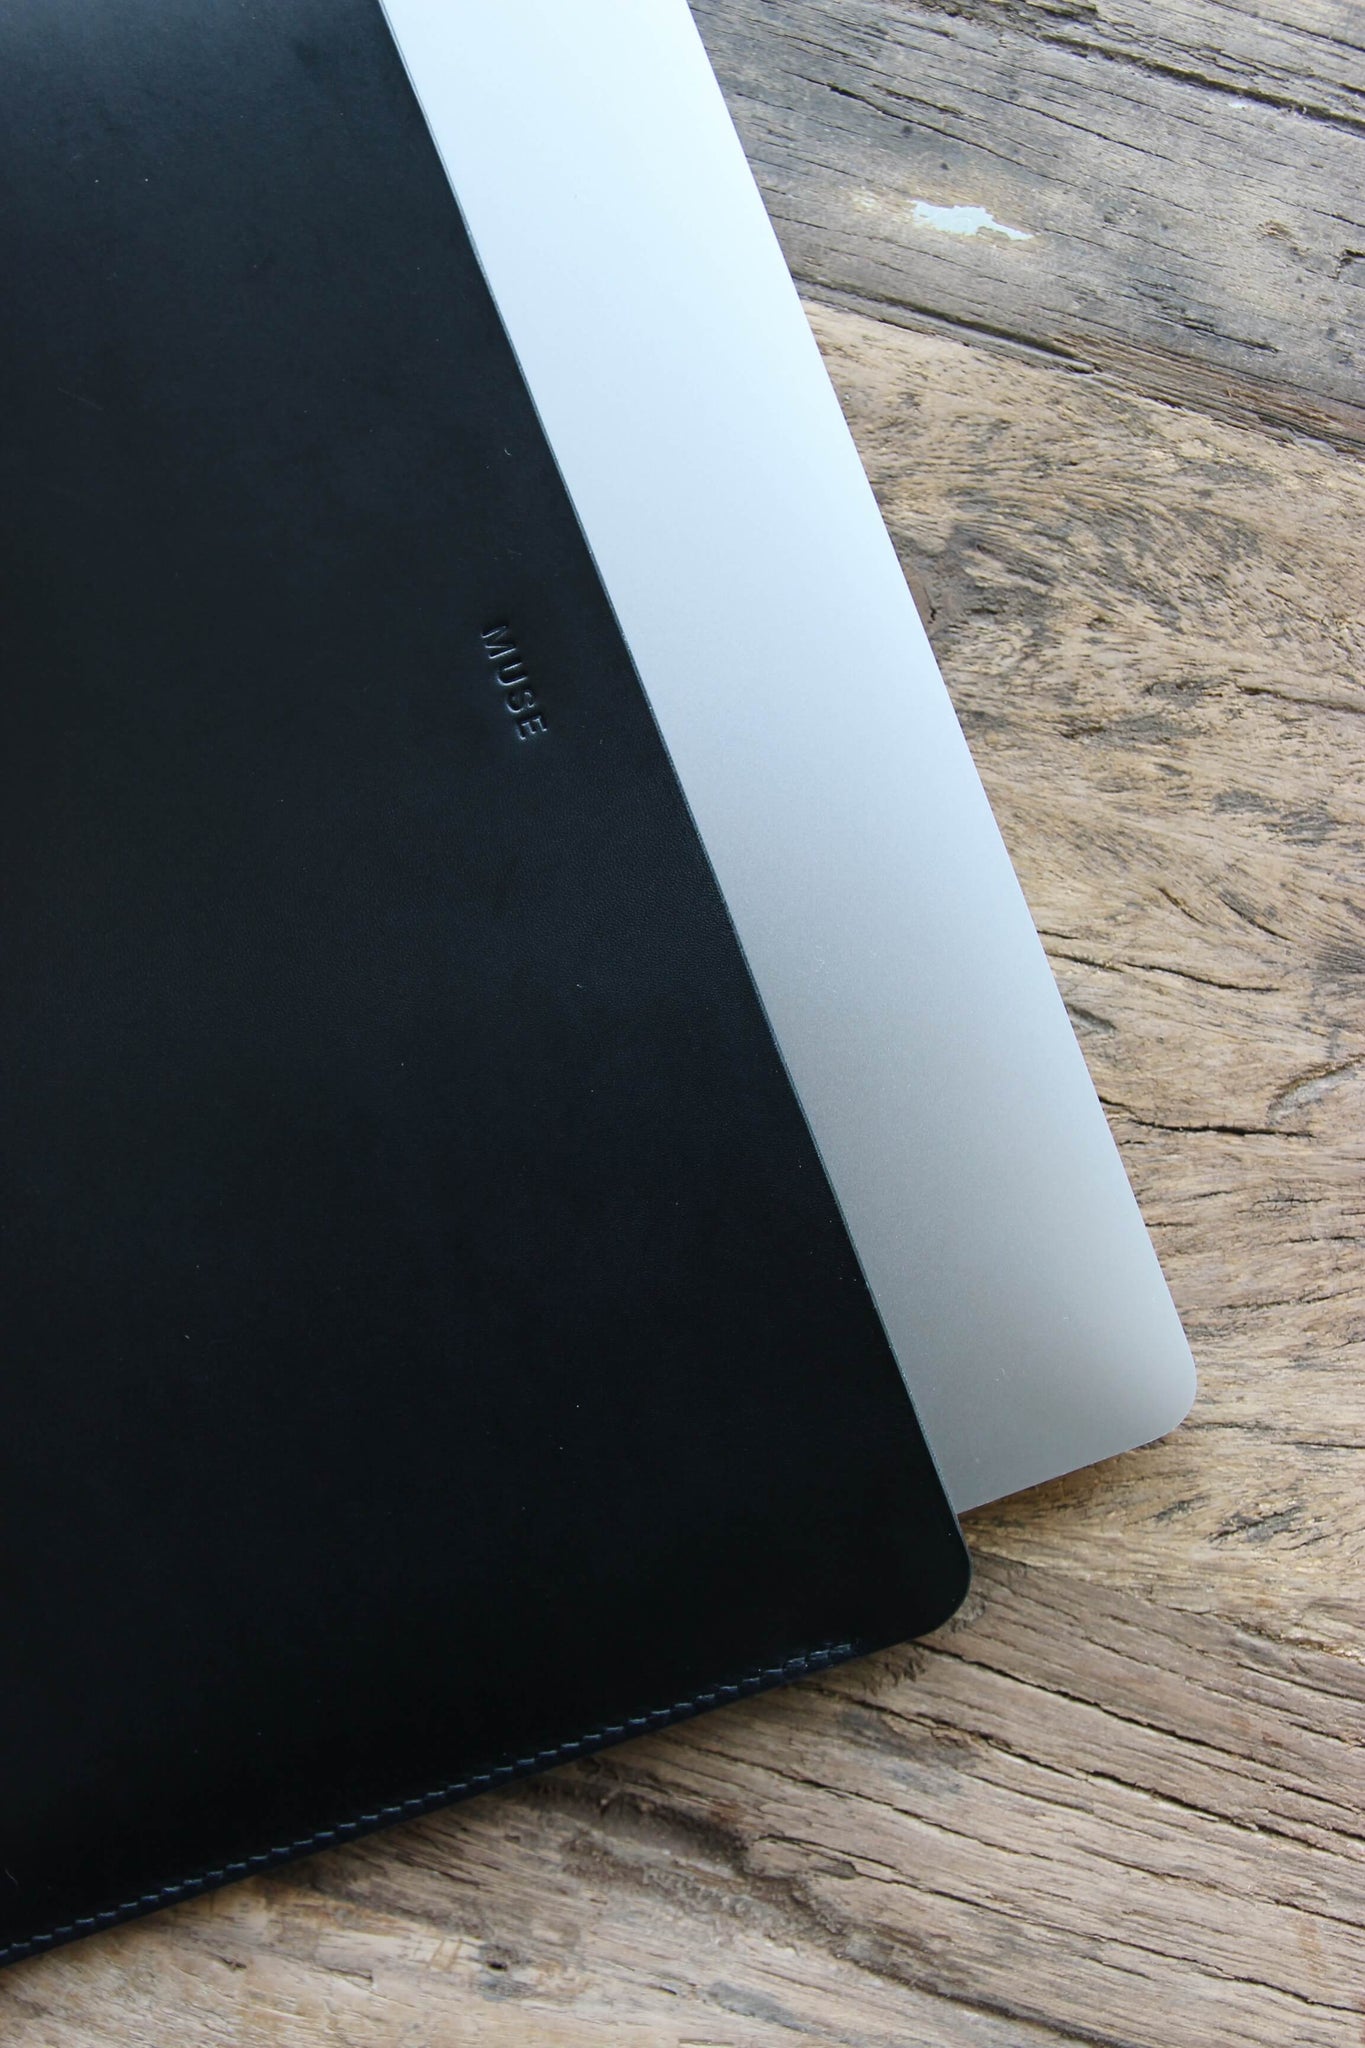 Auf einem Holztisch liegt eine Leder MacBook Hülle in Schwarz und aus dieser guckt ein kleines Stück eines MacBooks heraus.